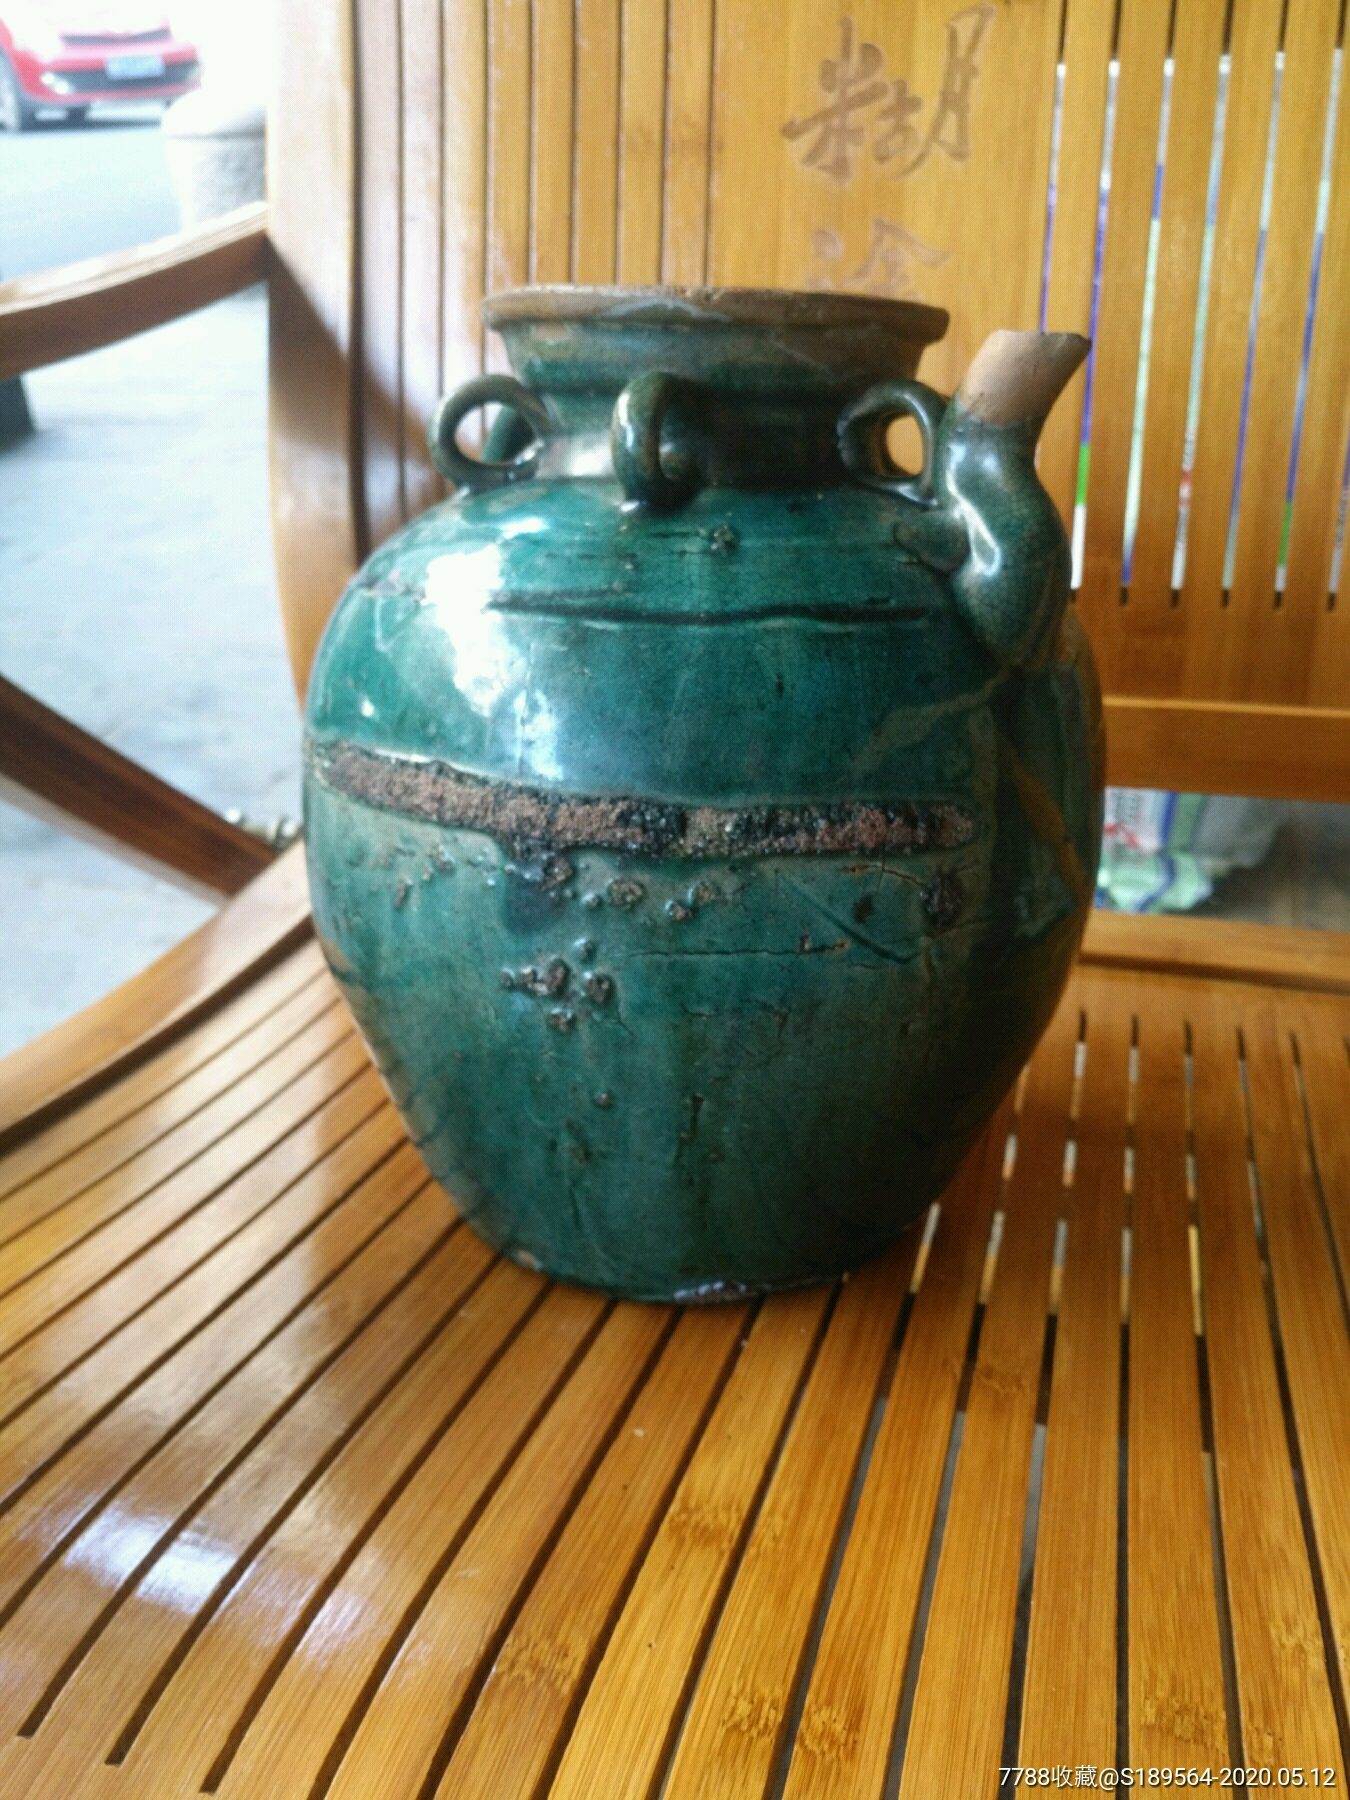 铜官窑绿釉茶壶图片